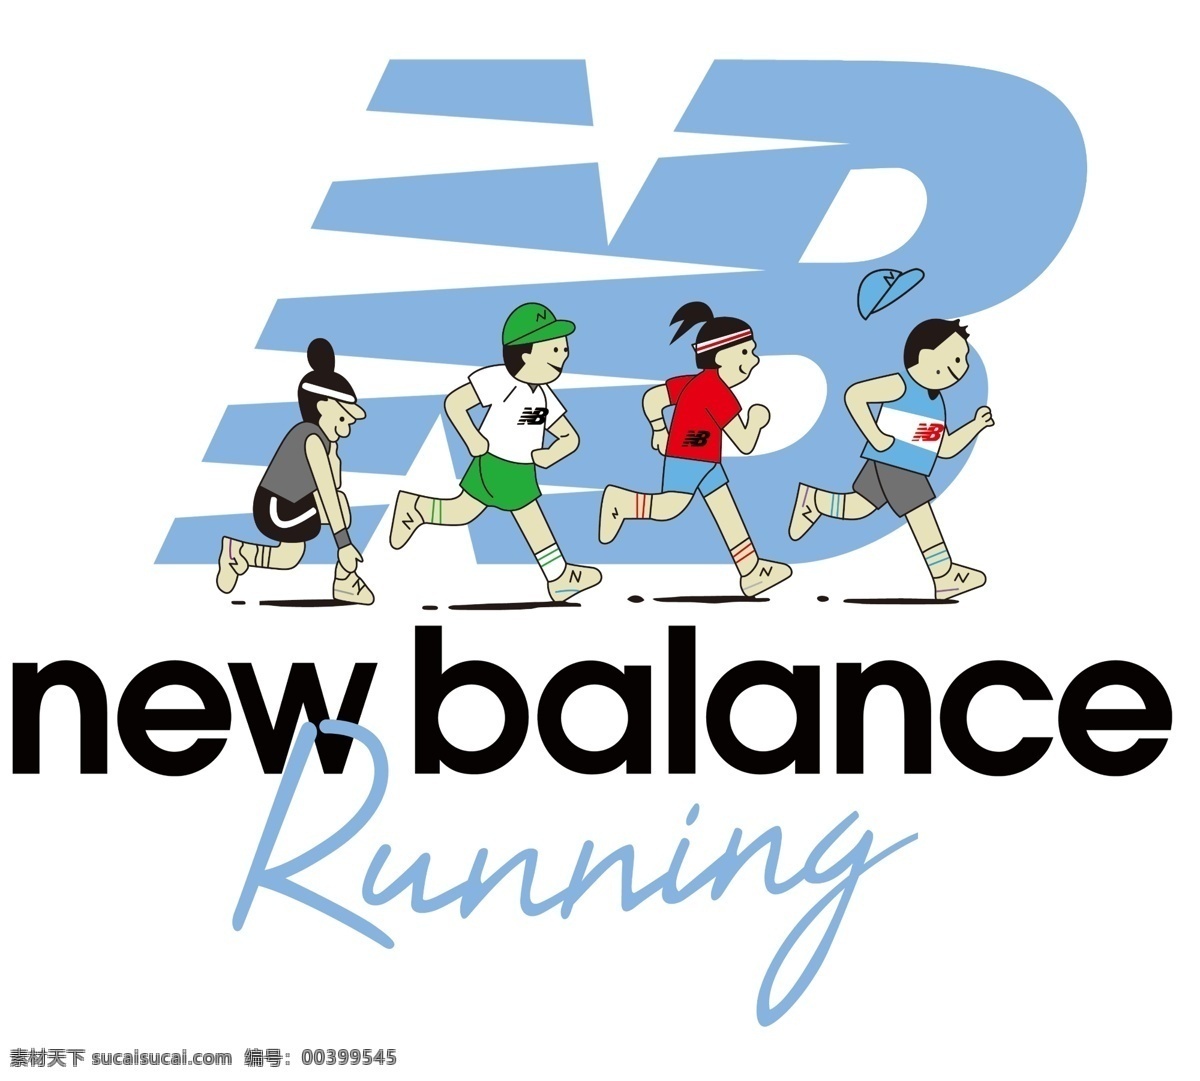 new balance 运动 nb 牛逼 运动人物 动漫动画 动漫人物